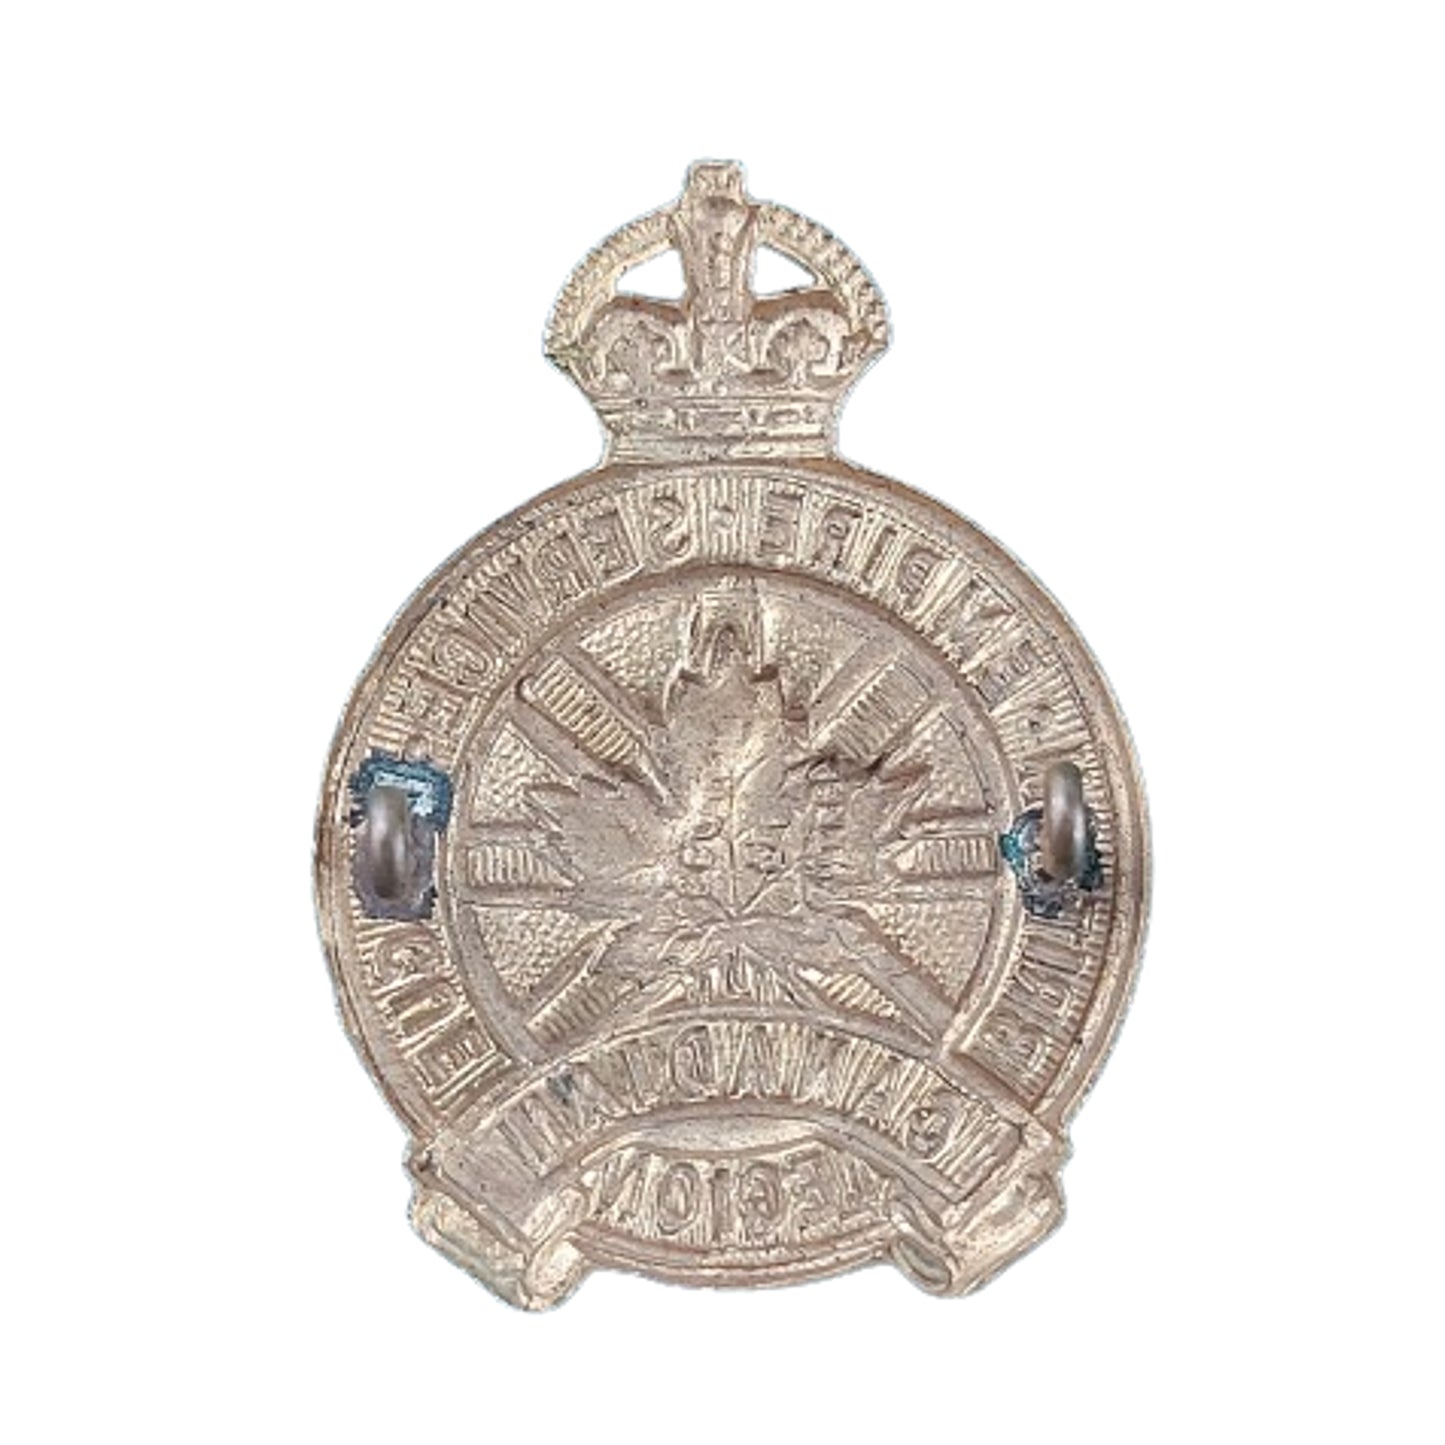 WW2 Royal Canadian Legion Cap Badge 1945